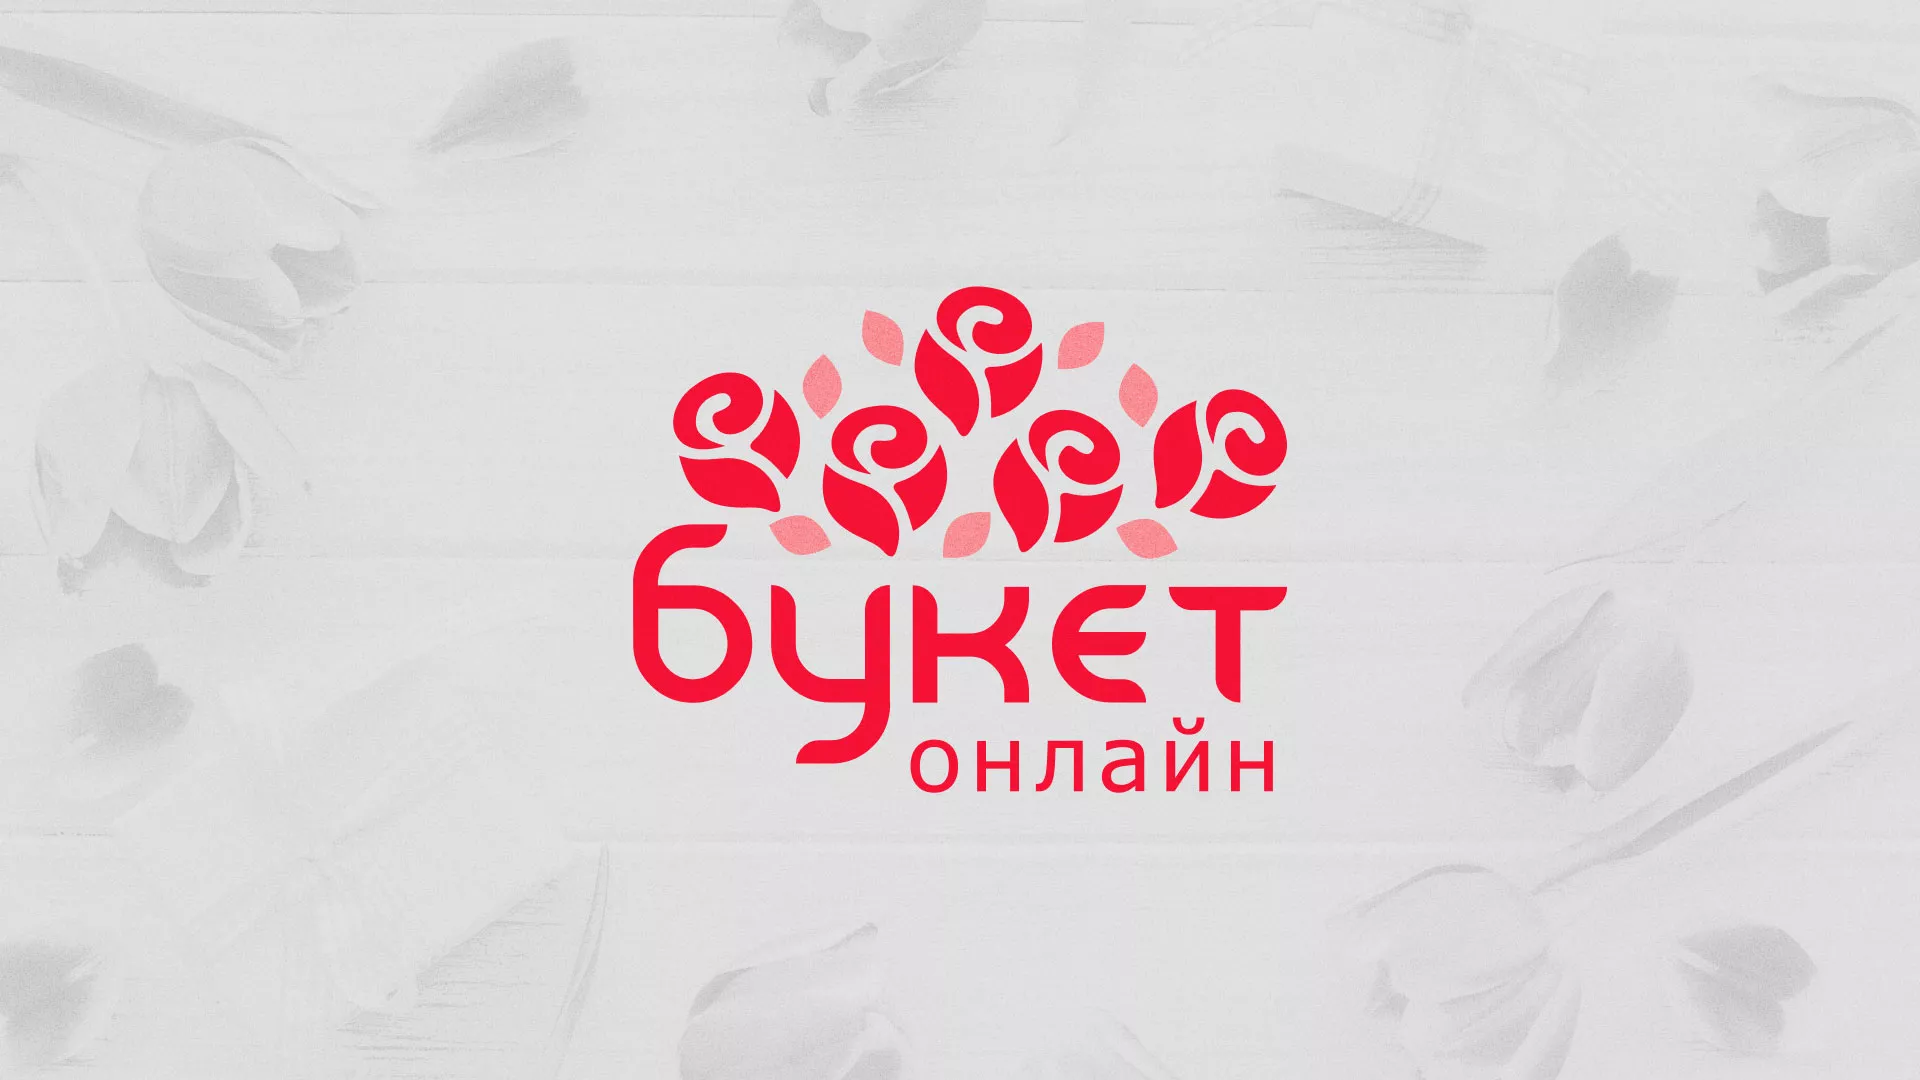 Создание интернет-магазина «Букет-онлайн» по цветам в Кстово